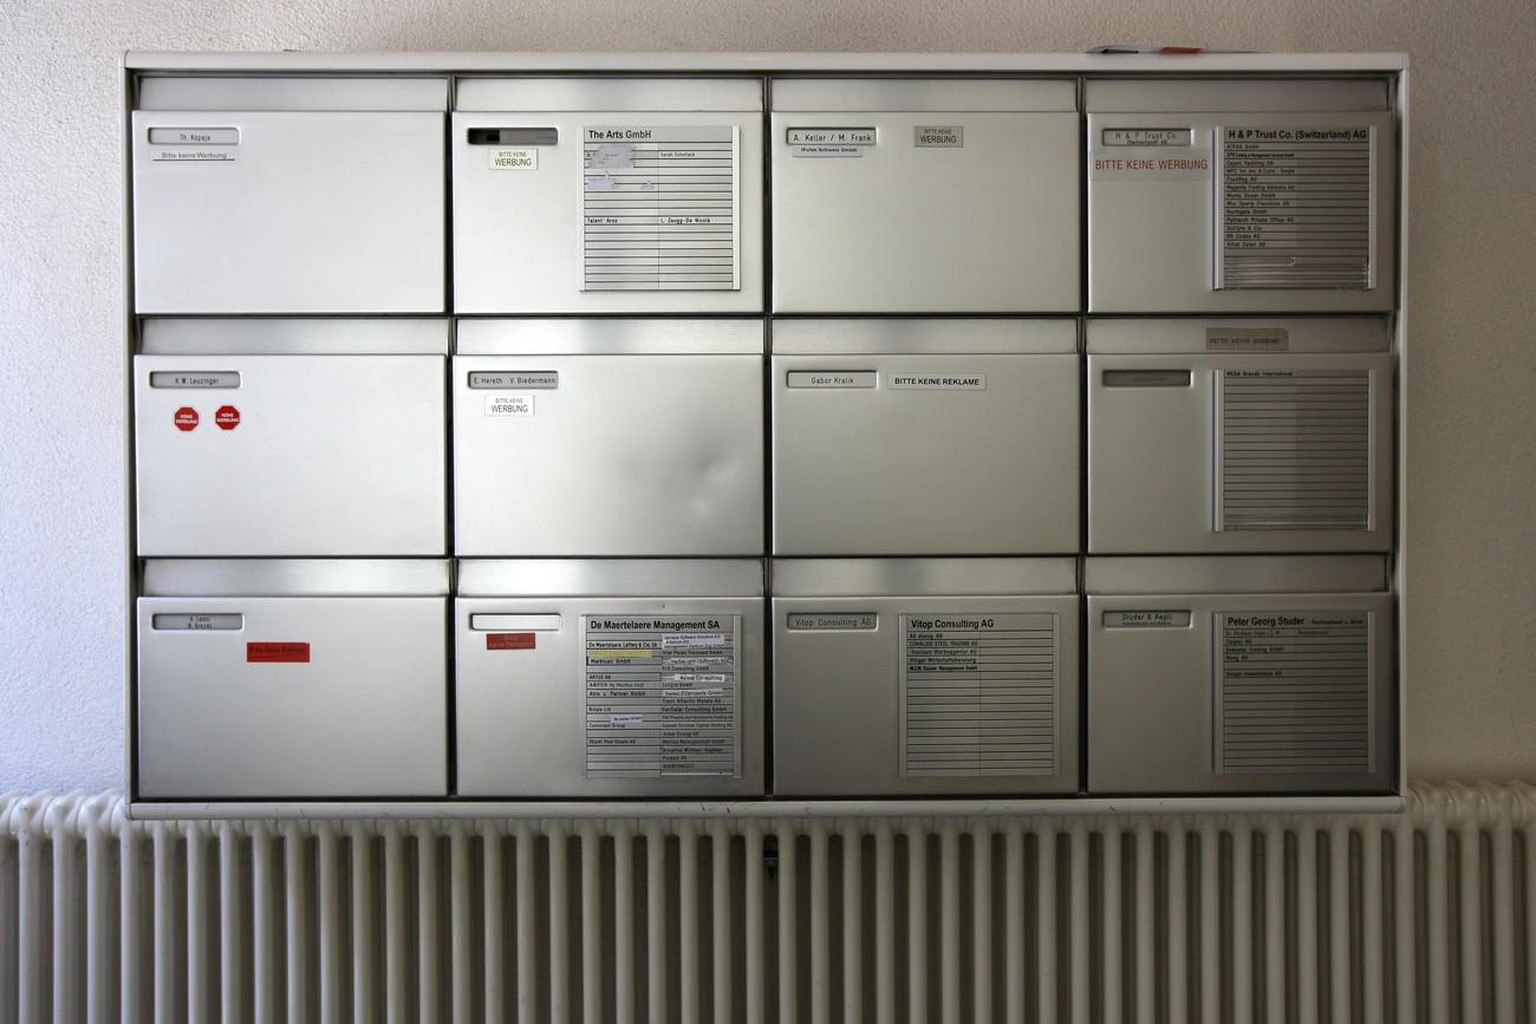 Der Briefkasten im Haus an der Poststrasse 6 in Zug, welches das Domizil diverser Firmen ist, unter anderem die Vitop Consulting AG, aufgenommen am Donnerstag, 13. Juni 2013...(KEYSTONE/Alexandra Wey)